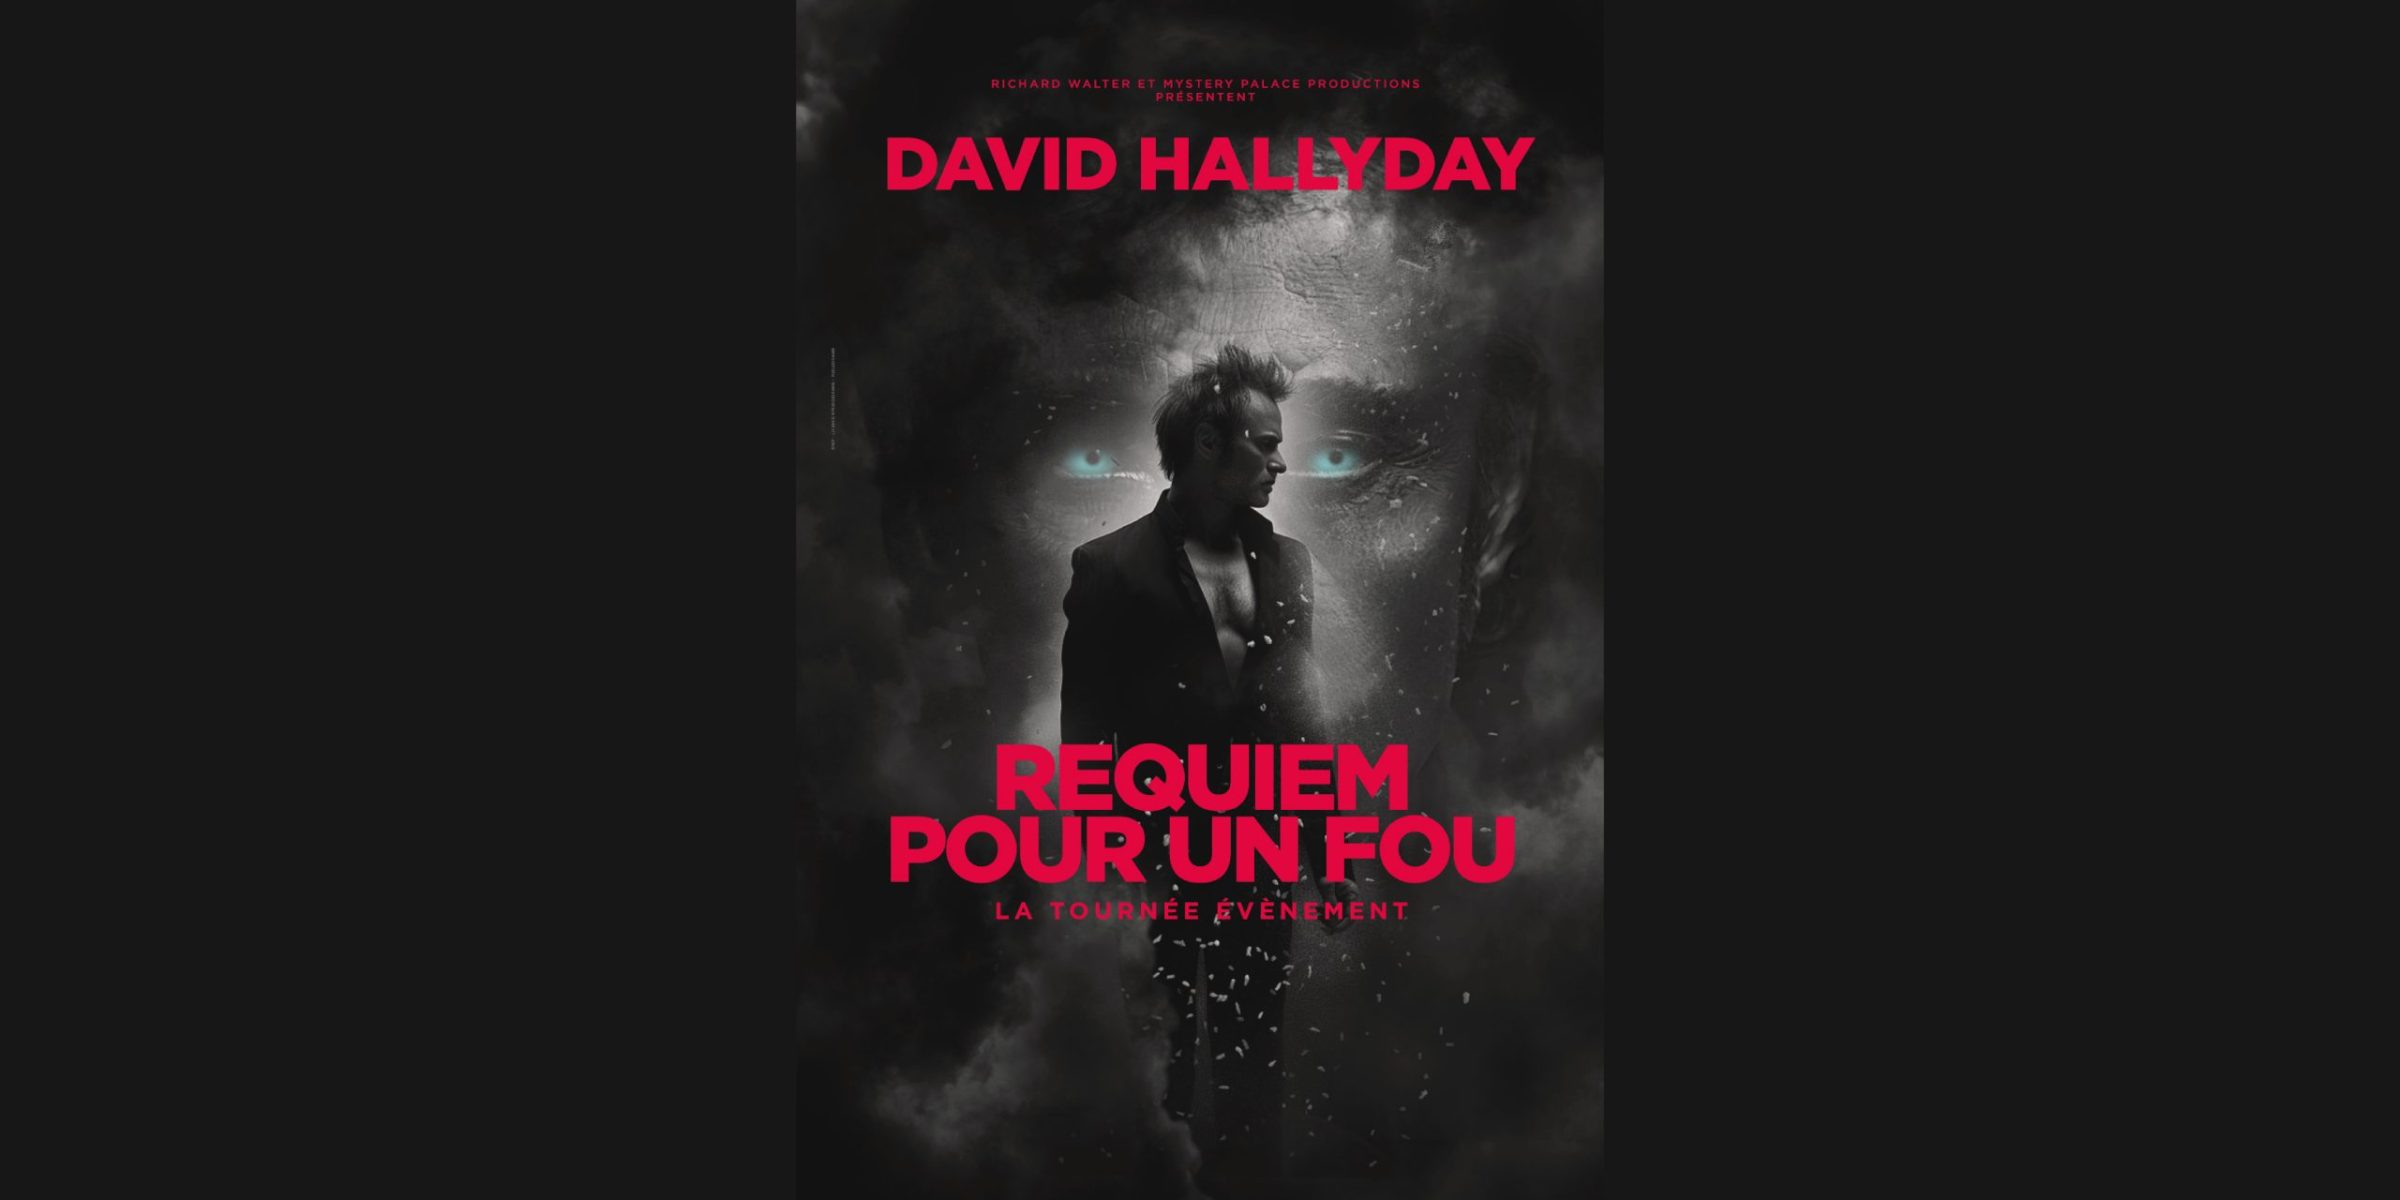 David Hallyday - Requiem pour un fou - Zenith de Lille